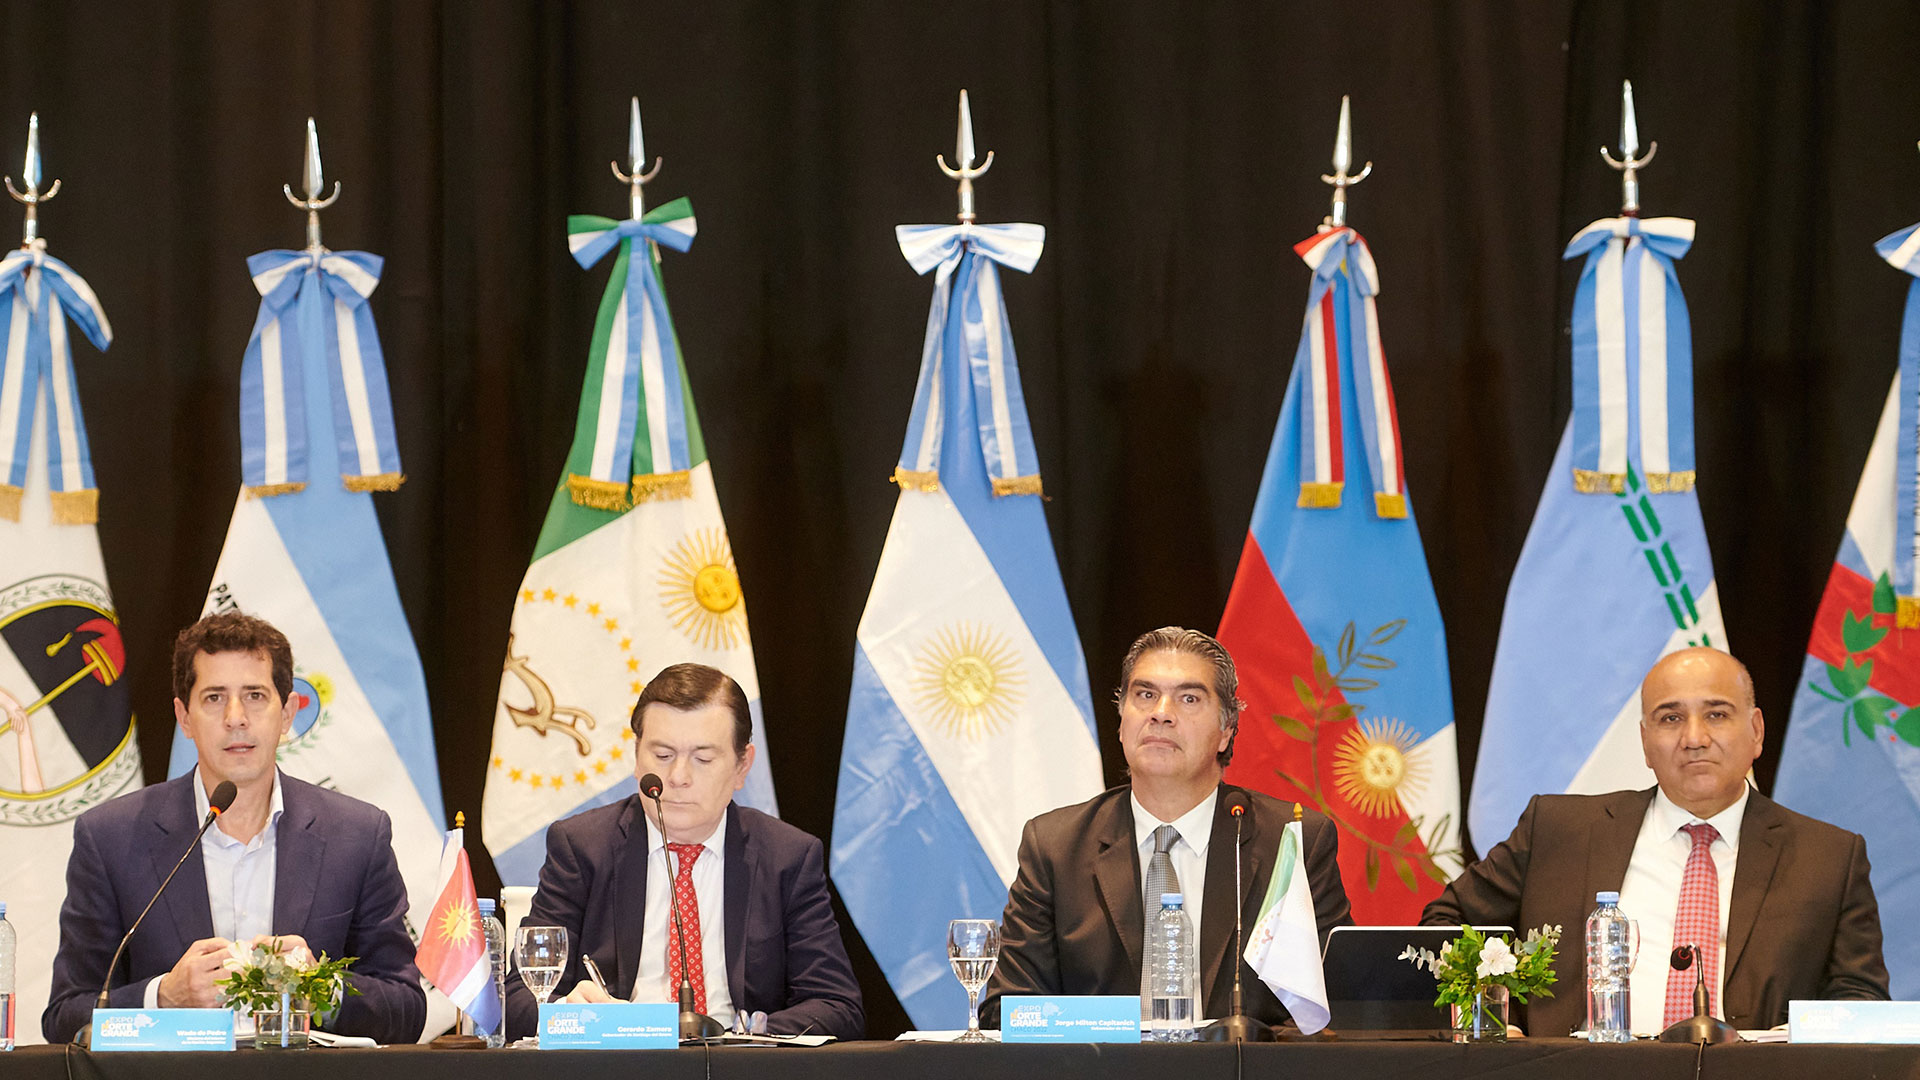 Con la firma de dos radicales, los gobernadores del Norte repudiaron el ataque a CFK y pidieron “redoblar el compromiso con el diálogo”